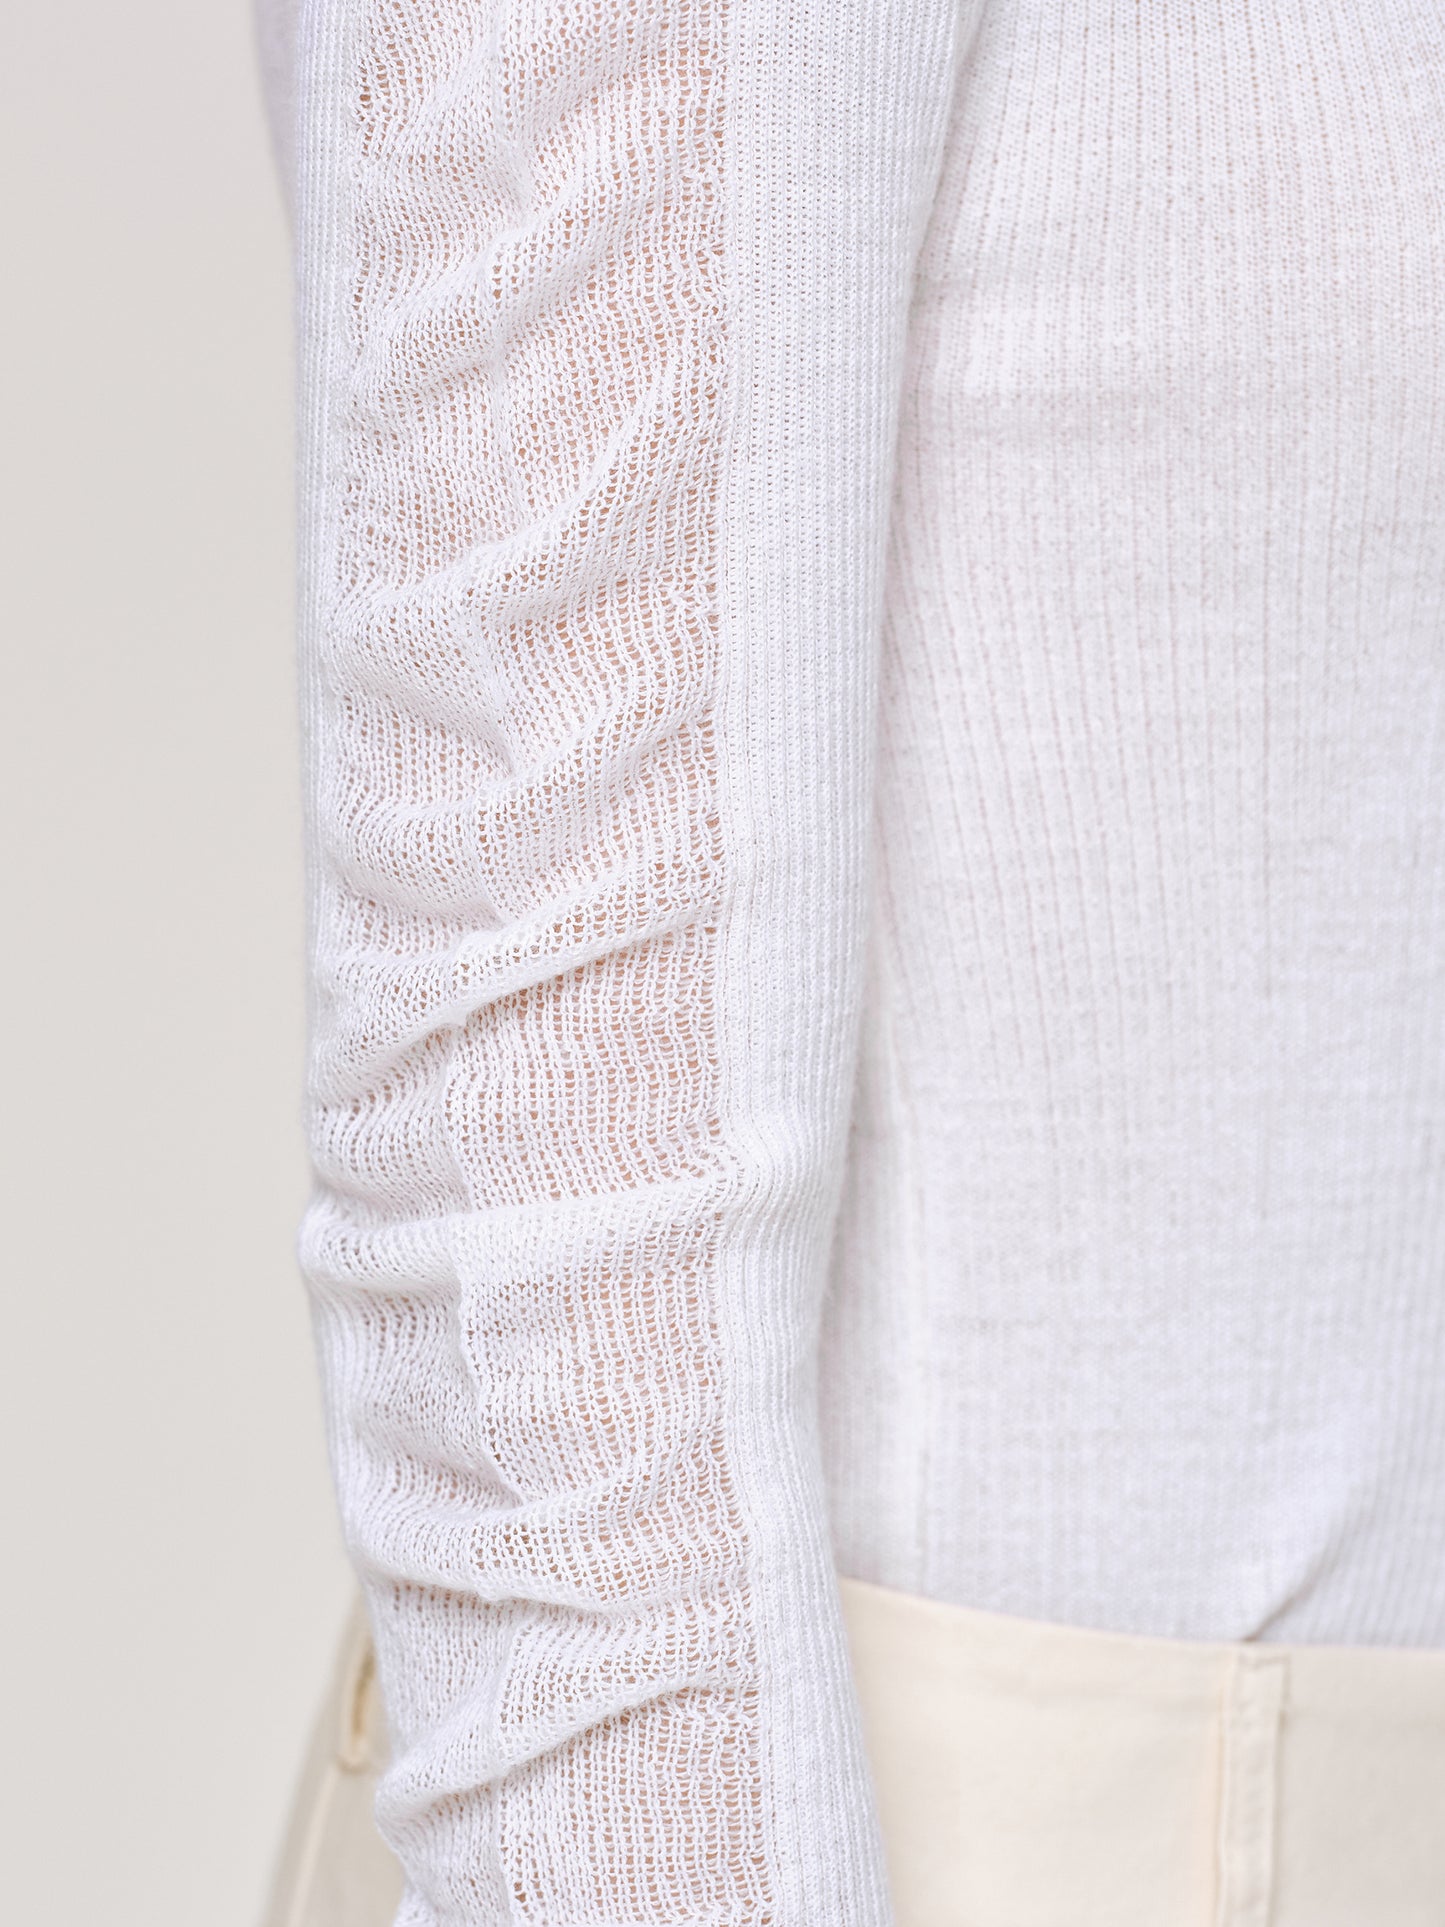 Sheer Sleeve Knit, White